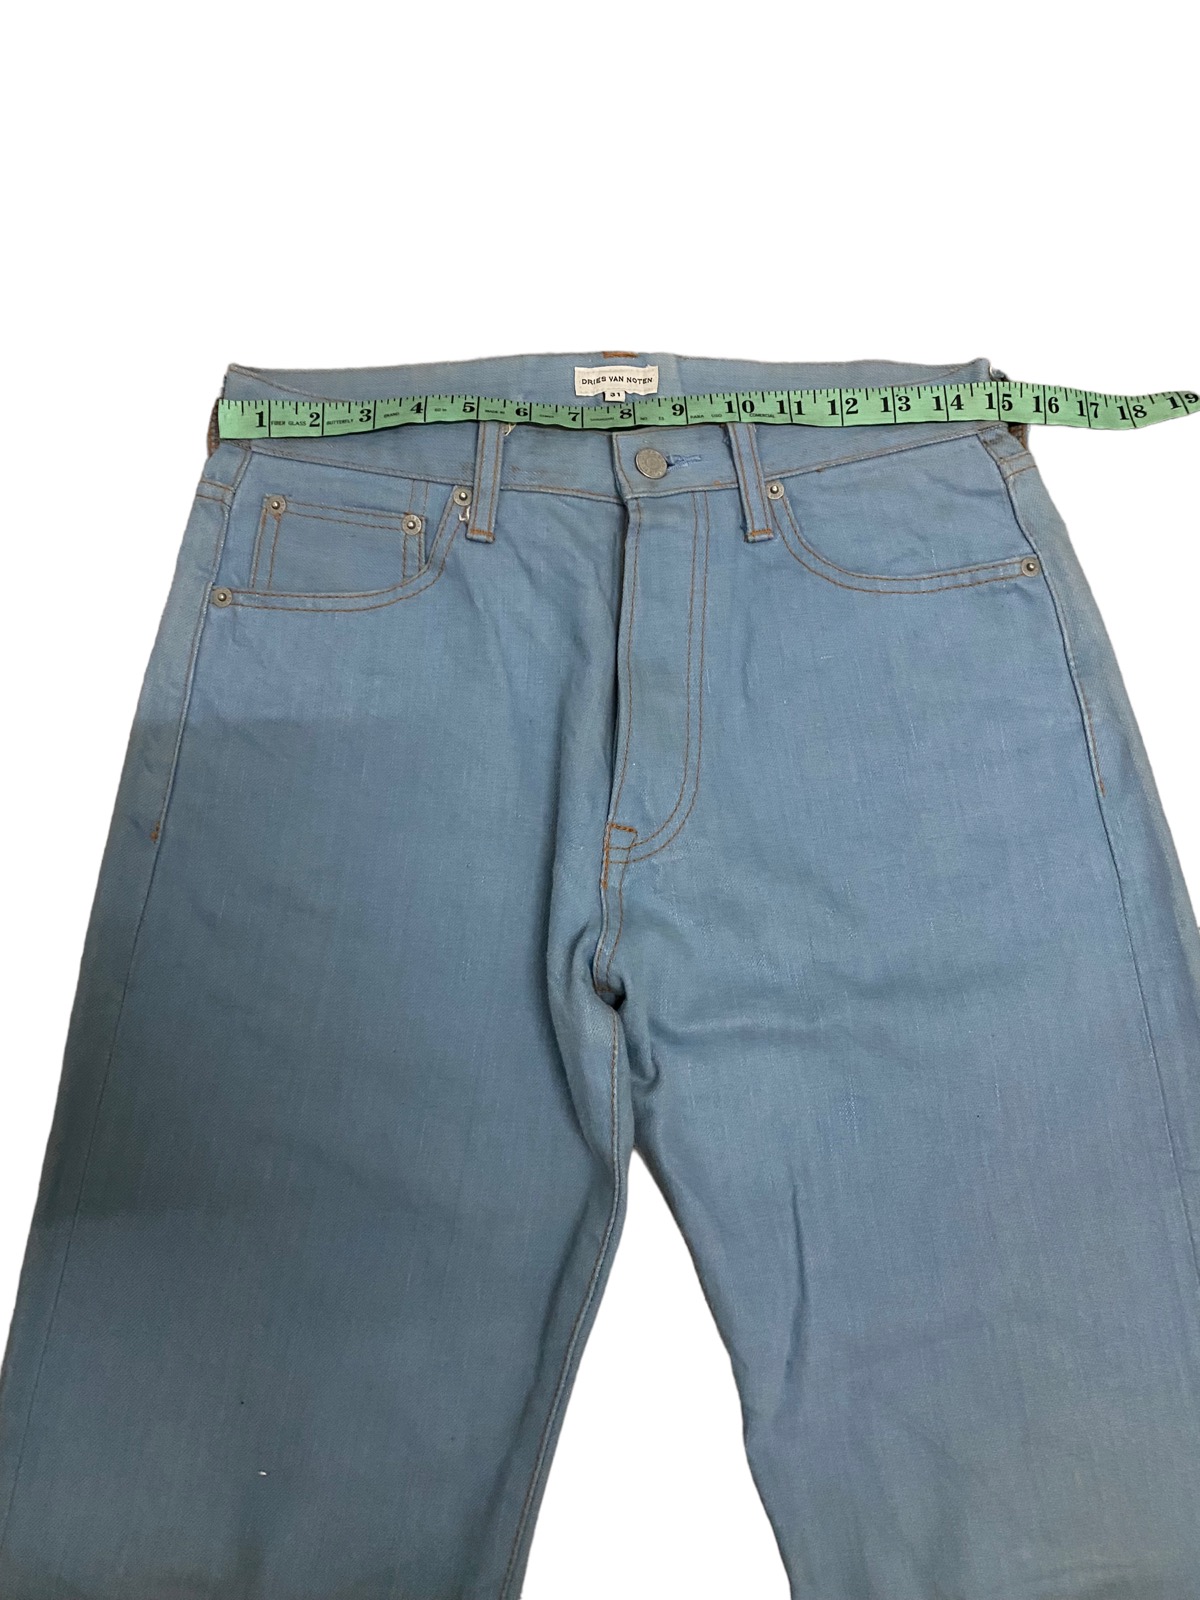 Offer‼️Vintage Dries Van Noten Selvedge Denim Jeans - 17